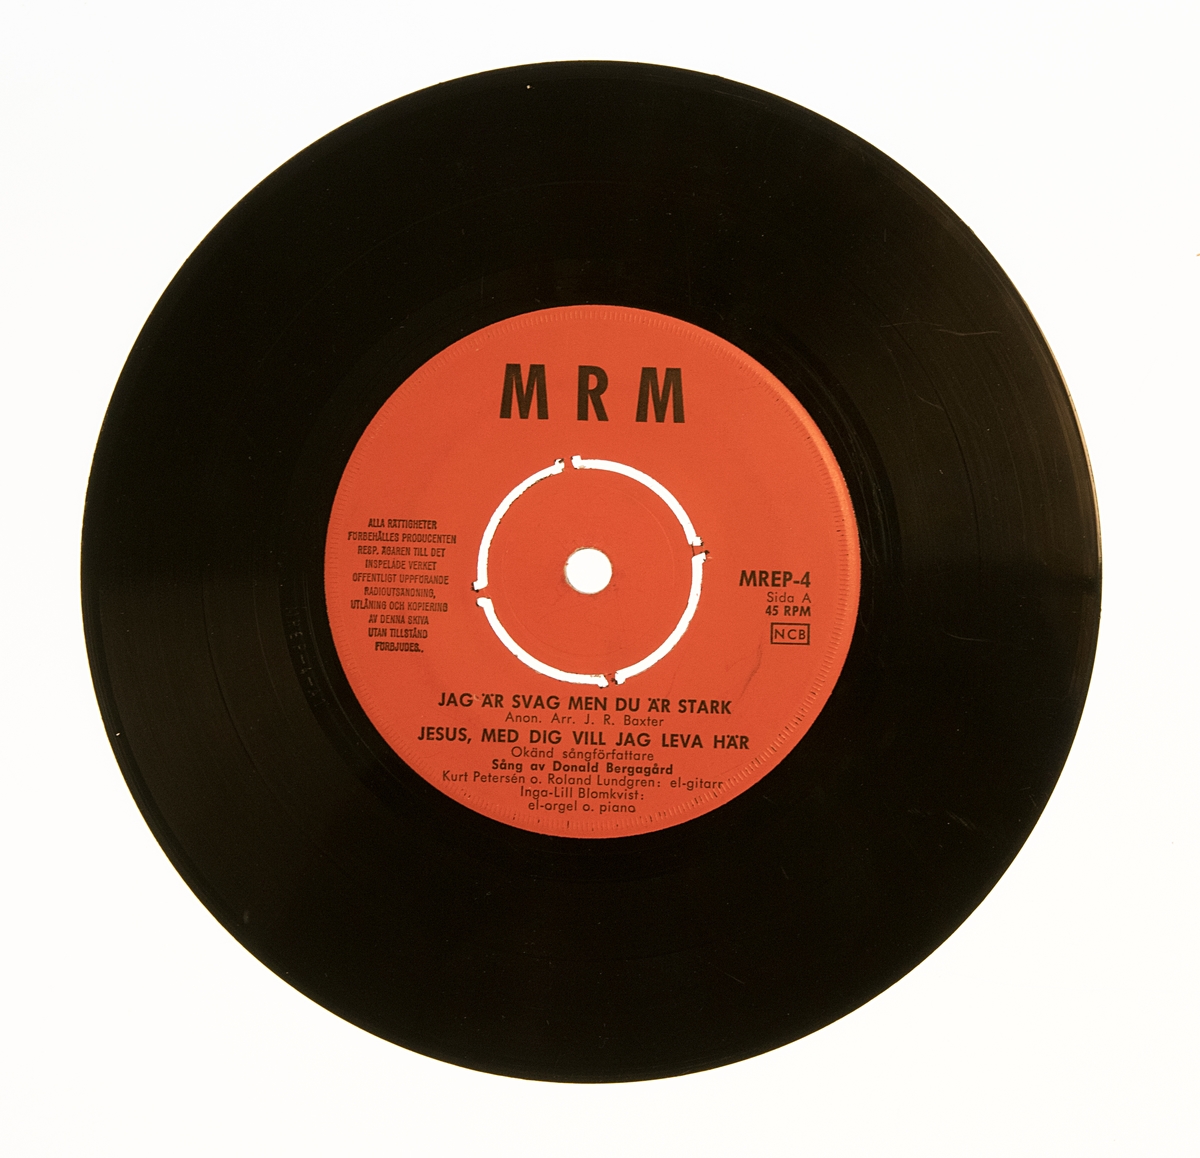 EP-skiva av svart vinyl och röd pappersetikett med svart tryckt text, i omslag av blankt papper. Omslaget är tryckt i färgerna brunt, vitt, svart, gult. Framsidan har ett svart-gult fotografi av sångaren Donald Bergagård. Baksidan innehåller text om skivnytt från förlaget Midnattsropet.

:1 Singel-skiva, MREP-4, skivbolaget MRM
A-sidan innehåller melodierna/sångerna:
1. "Jag är svag men du är stark". Anon. Arr. J. R. Baxter. 
2. "Jesus, med dig vill jag leva här". Okänd sångförfattare; Sång av Donald Bergagård; Kurt Petersén och Roland Lundgren: el-gitarr; Inga-Lill Blomkvist: elgitarr och piano.

B-sidan innehåller melodierna/sångerna:
1. "Vi har ett underbart hem". Negro spiritual. Sv. text: Donald Bergagård. 
2. Jesus är densamme". Sally Bill; Sång av Donald Bergagård; Kurt Petersén och Roland Lundgren: elgitarr; Inga-Lill Blomkvist: el-orgel.

:2 Omslag
Tryckt hos Sävsjö-Tryckeriet AB, 129763.